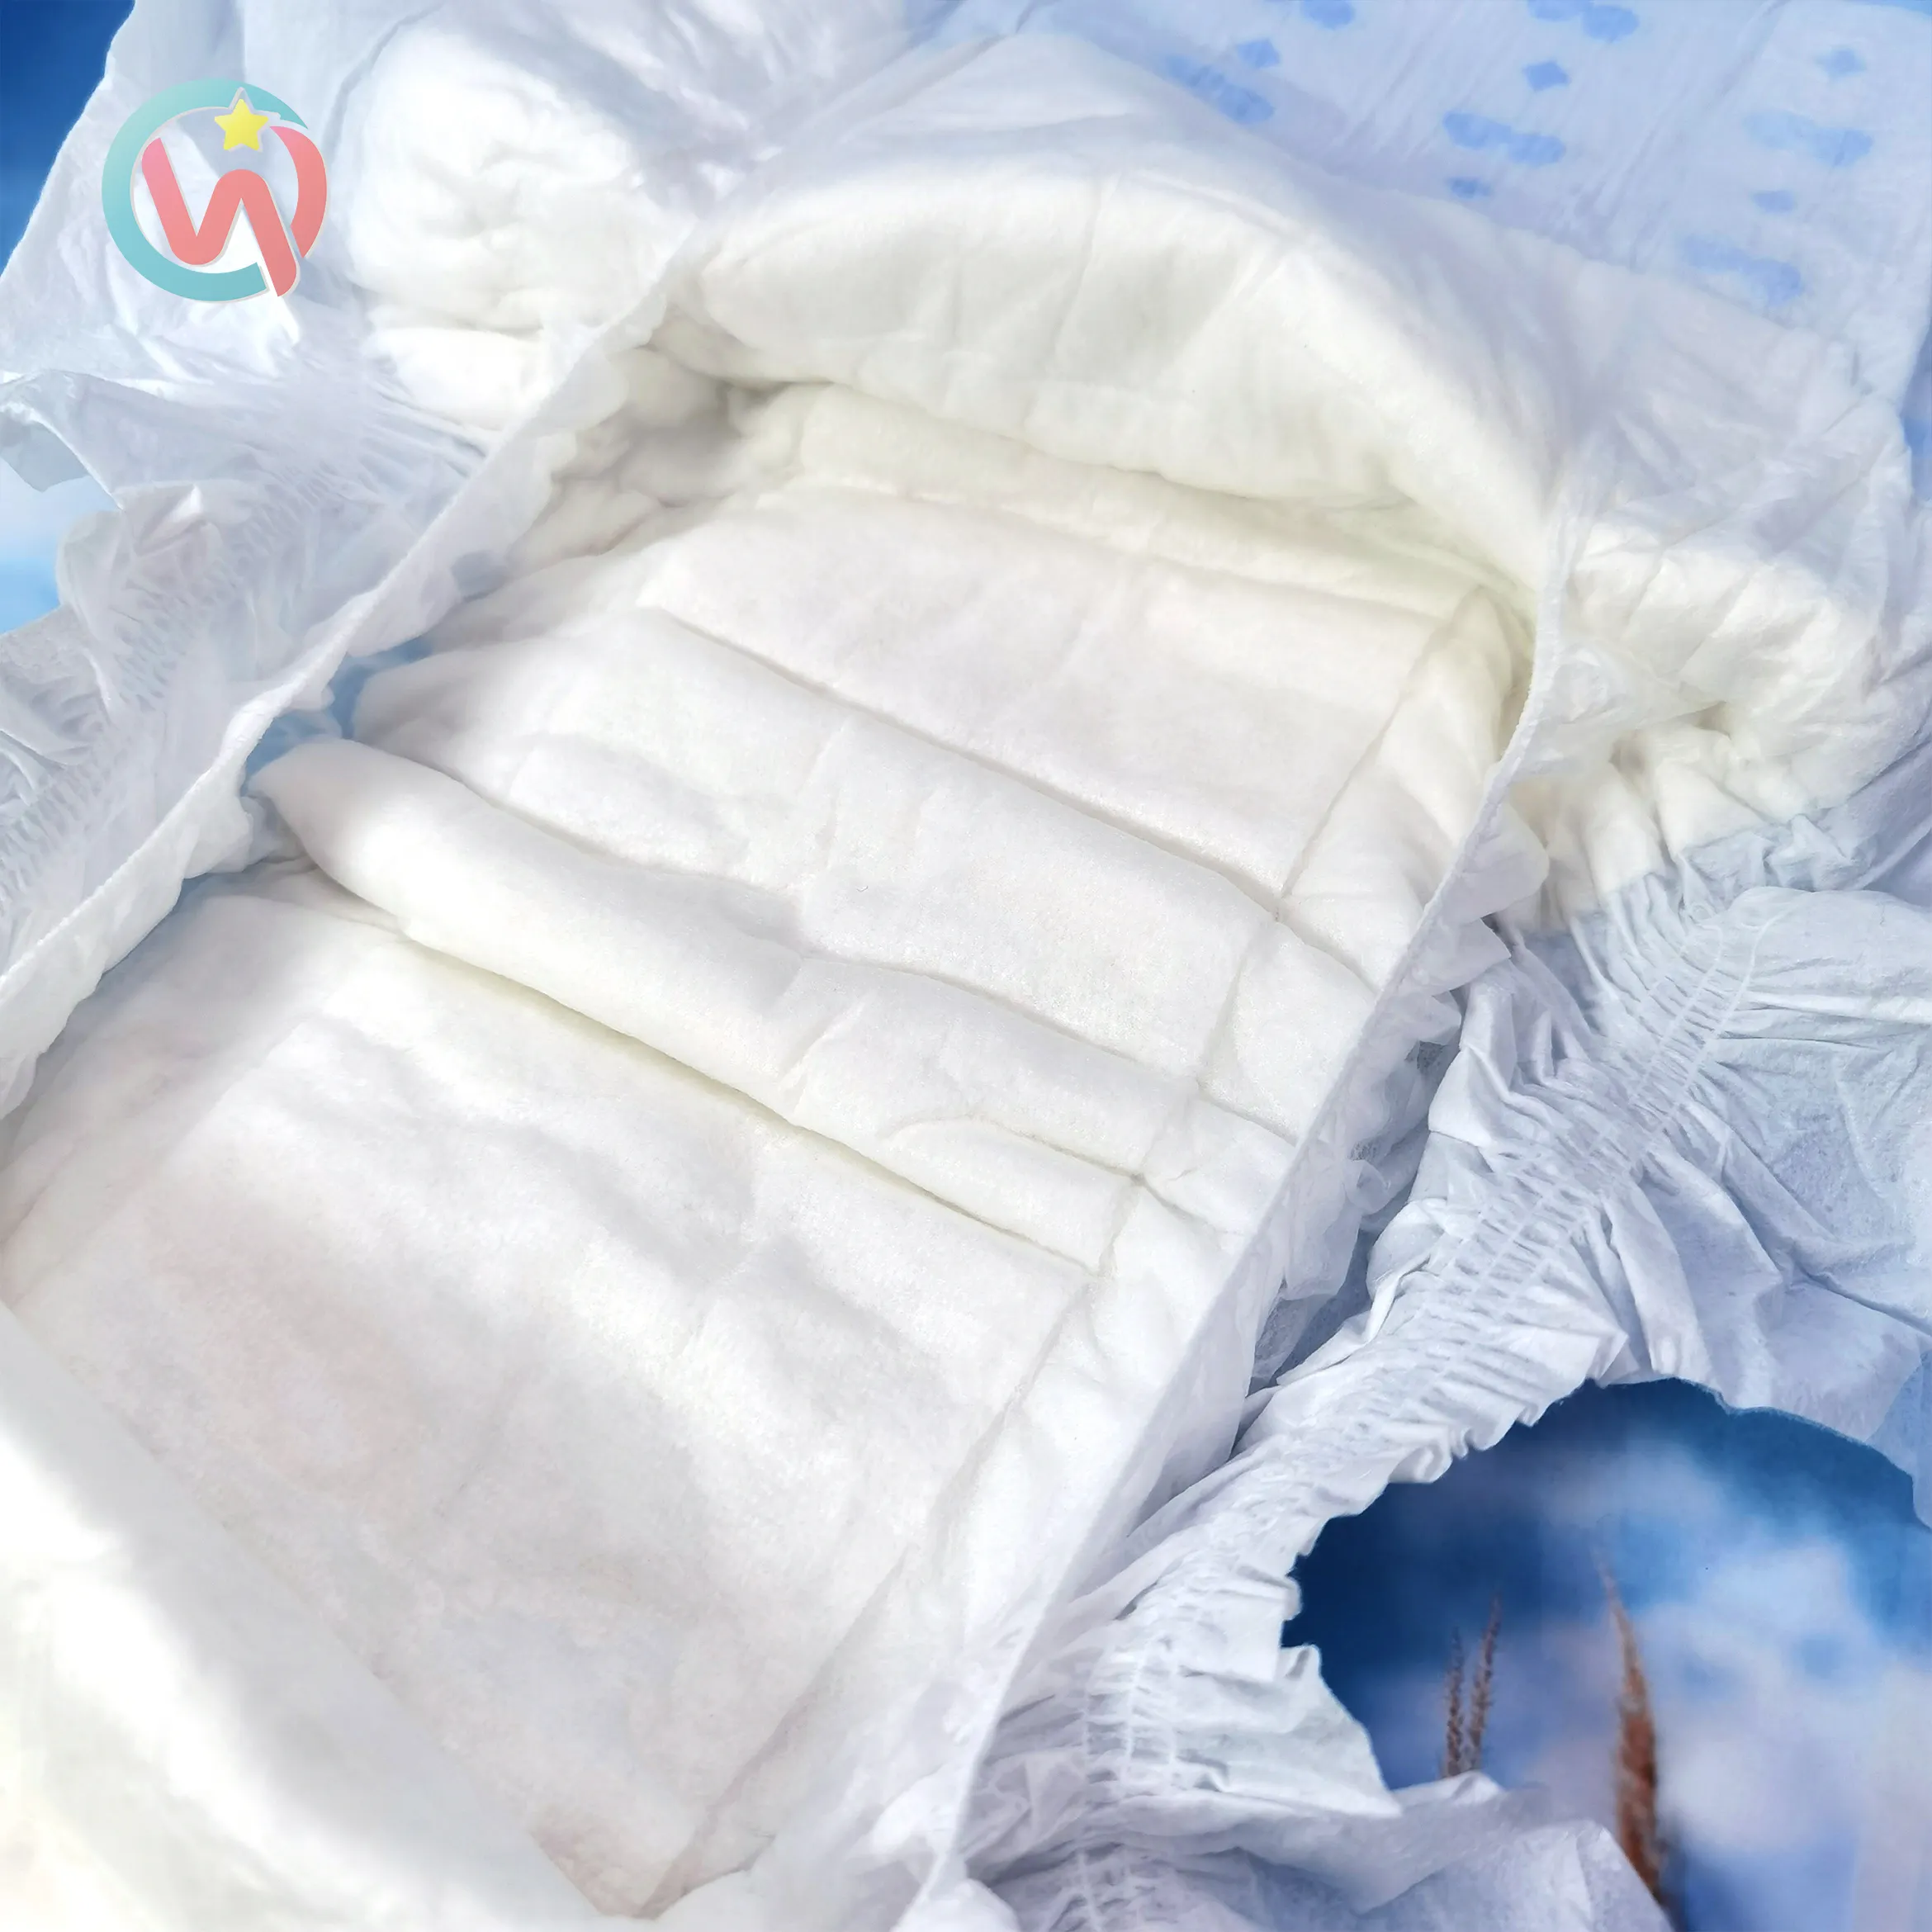 XL XXXL couches jetables pour bébé adulte humide extra grande taille femmes pull up utilisé pour les menstruations échantillon gratuit